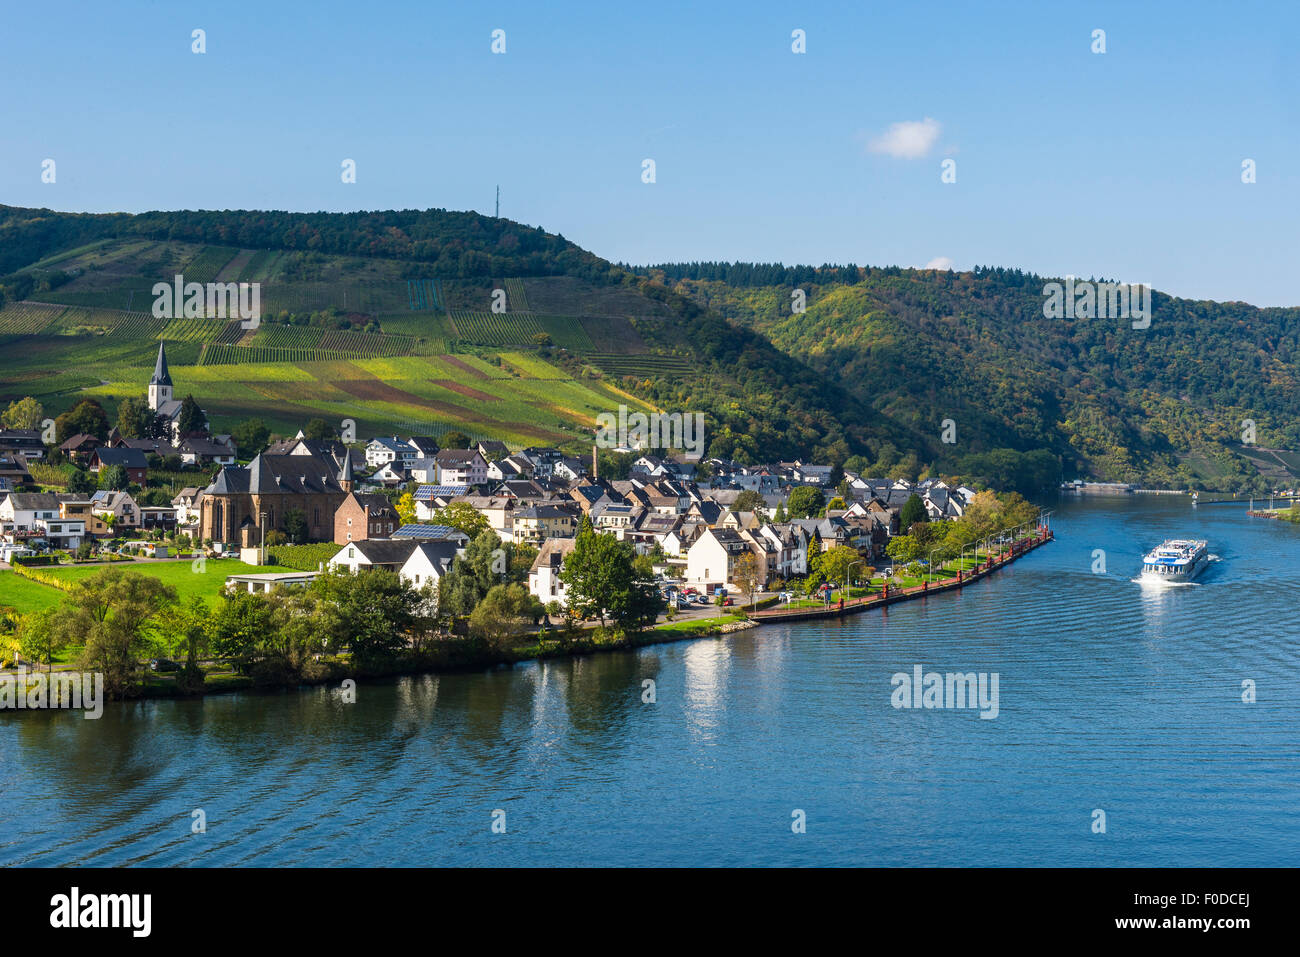 Bateau de croisière sur la Moselle Vallée de la Moselle, Ellenz passant, Rhénanie-Palatinat, Allemagne Banque D'Images